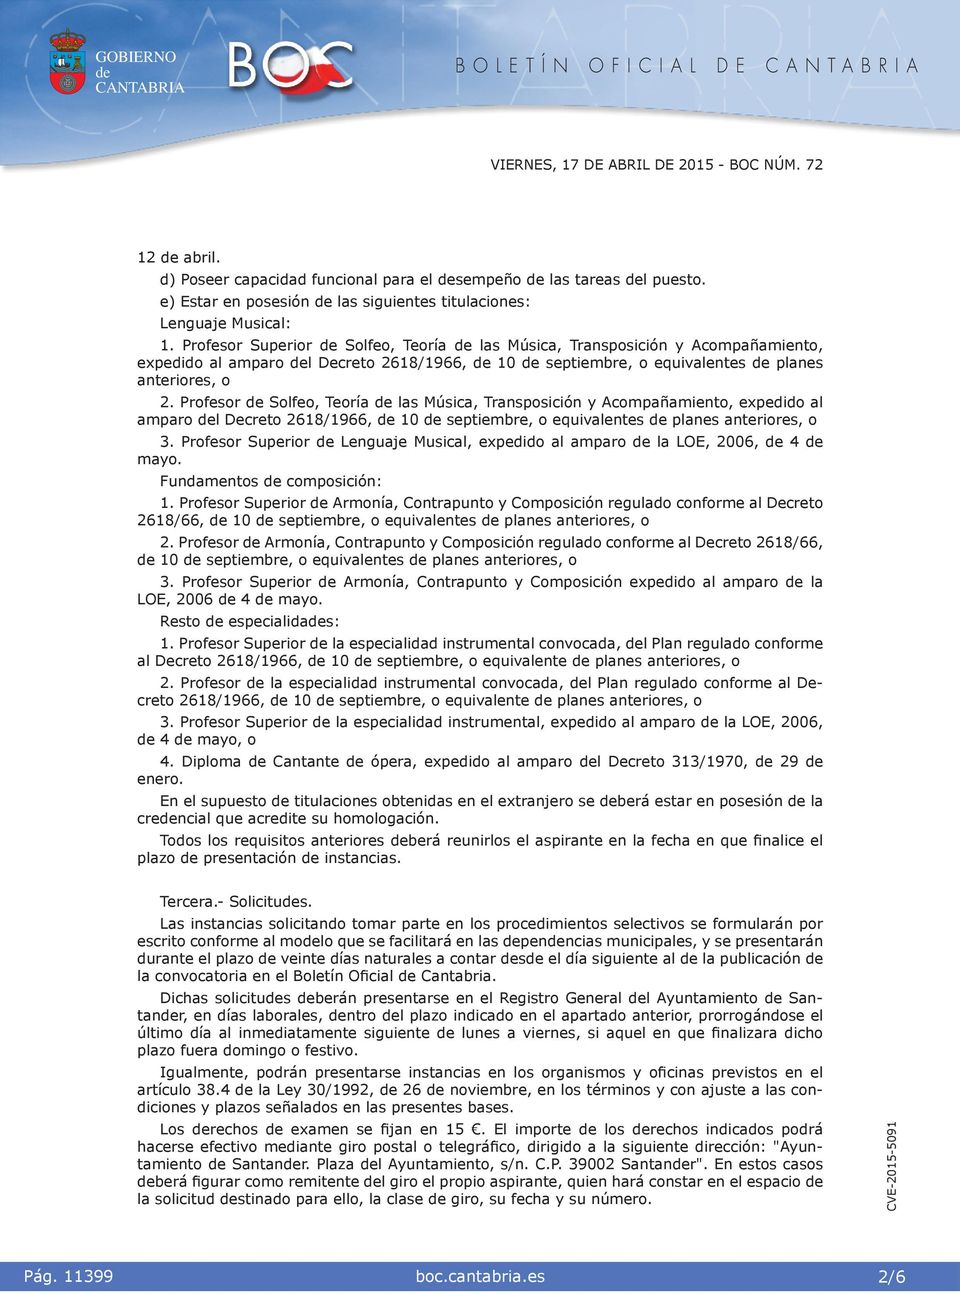 Profesor Solfeo, Teoría las Músca, Transposcón y Acompañamento, expeddo al amparo l Decreto 2618/1966, 10 septembre, o equvalentes planes anterores, o 3.